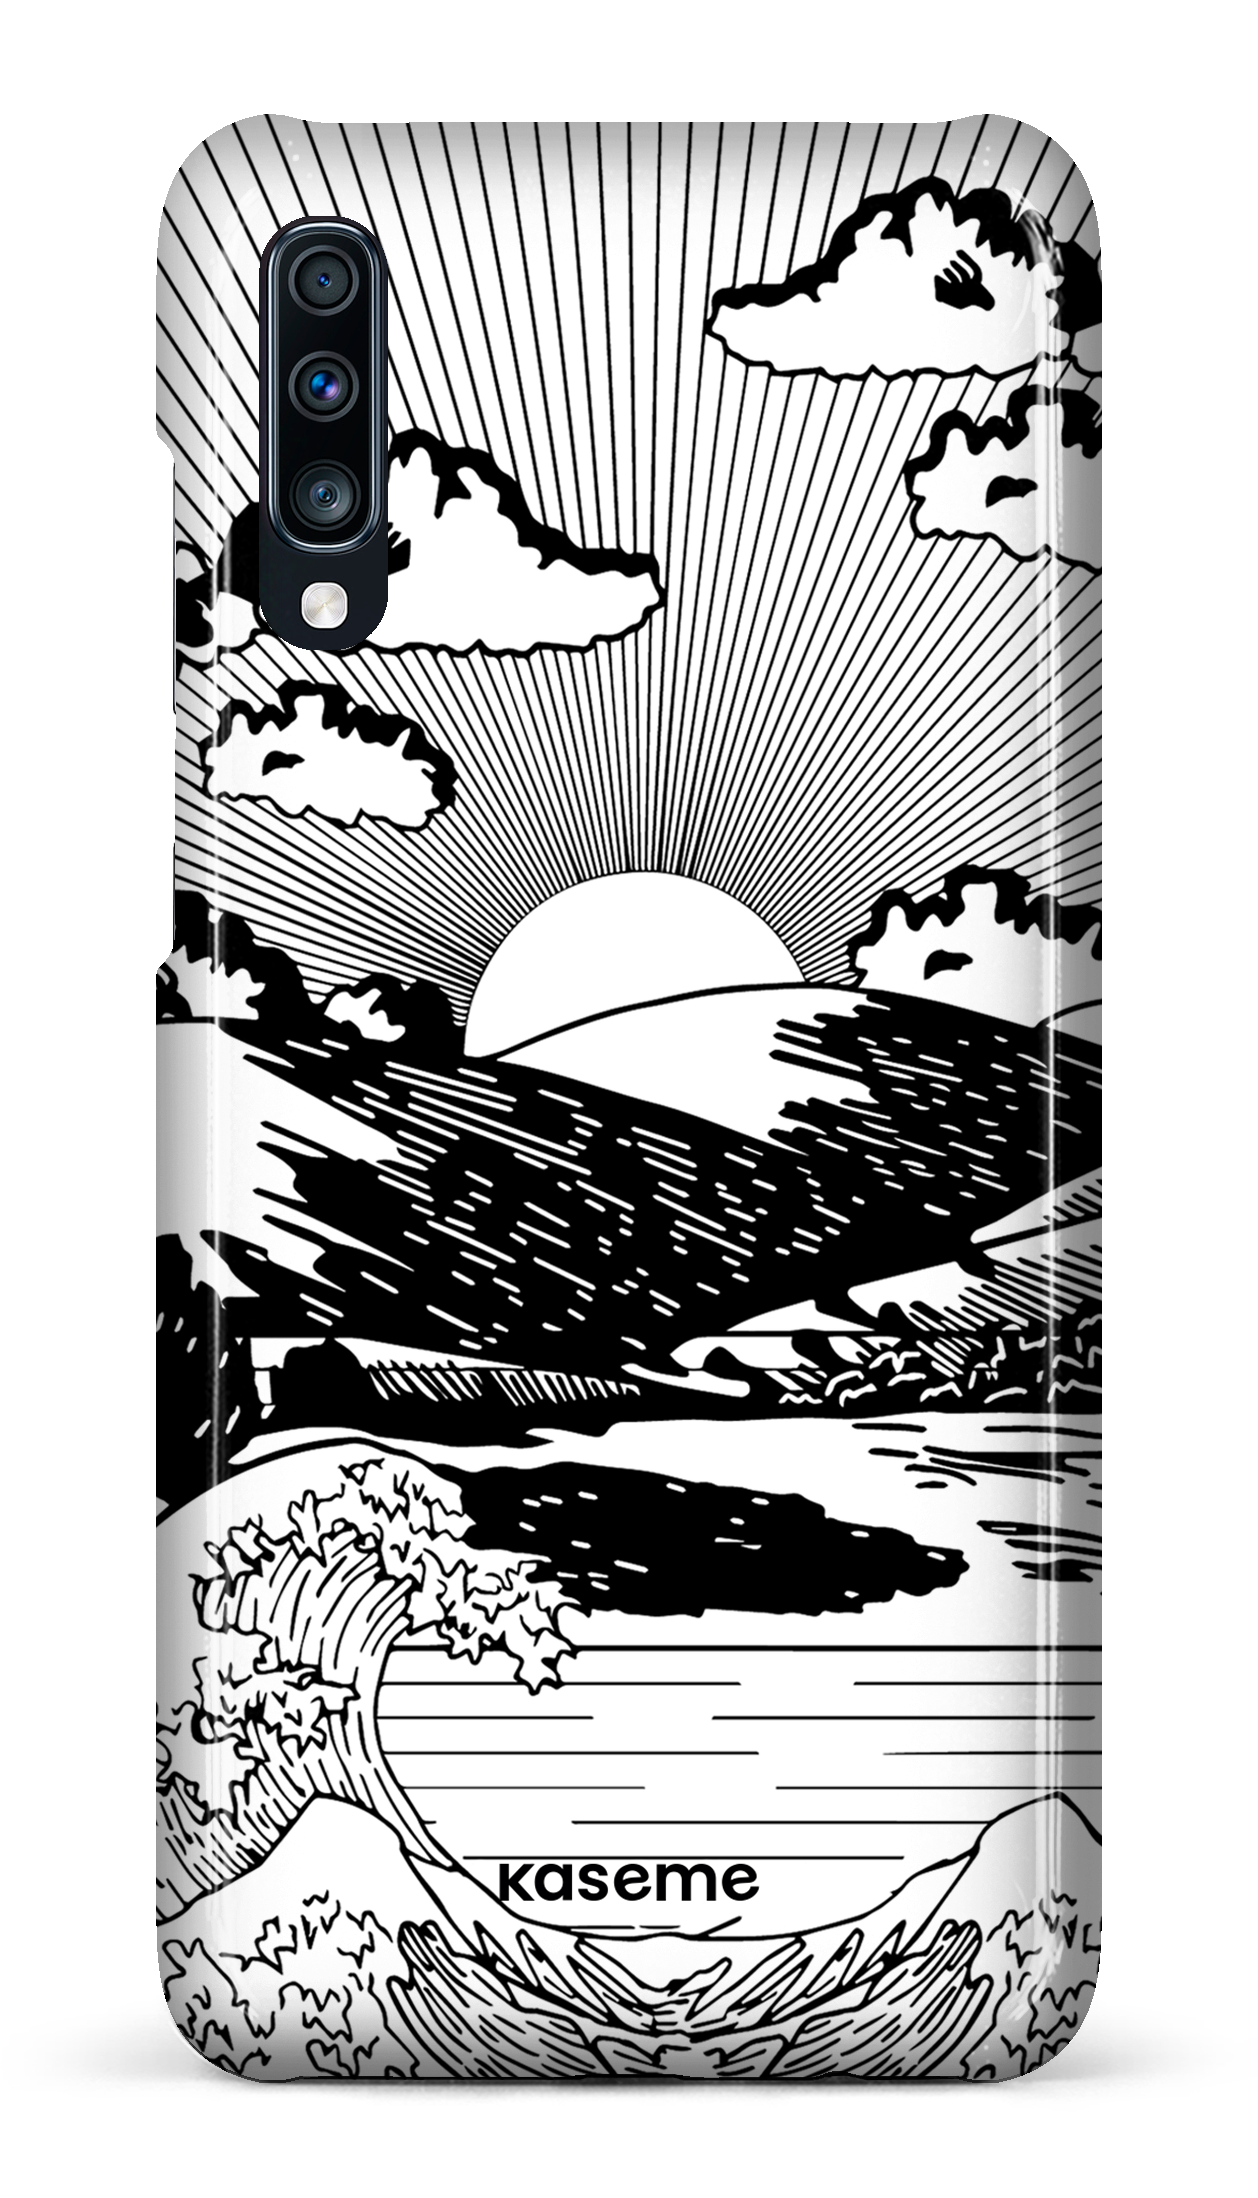 Sunbath - Galaxy A70